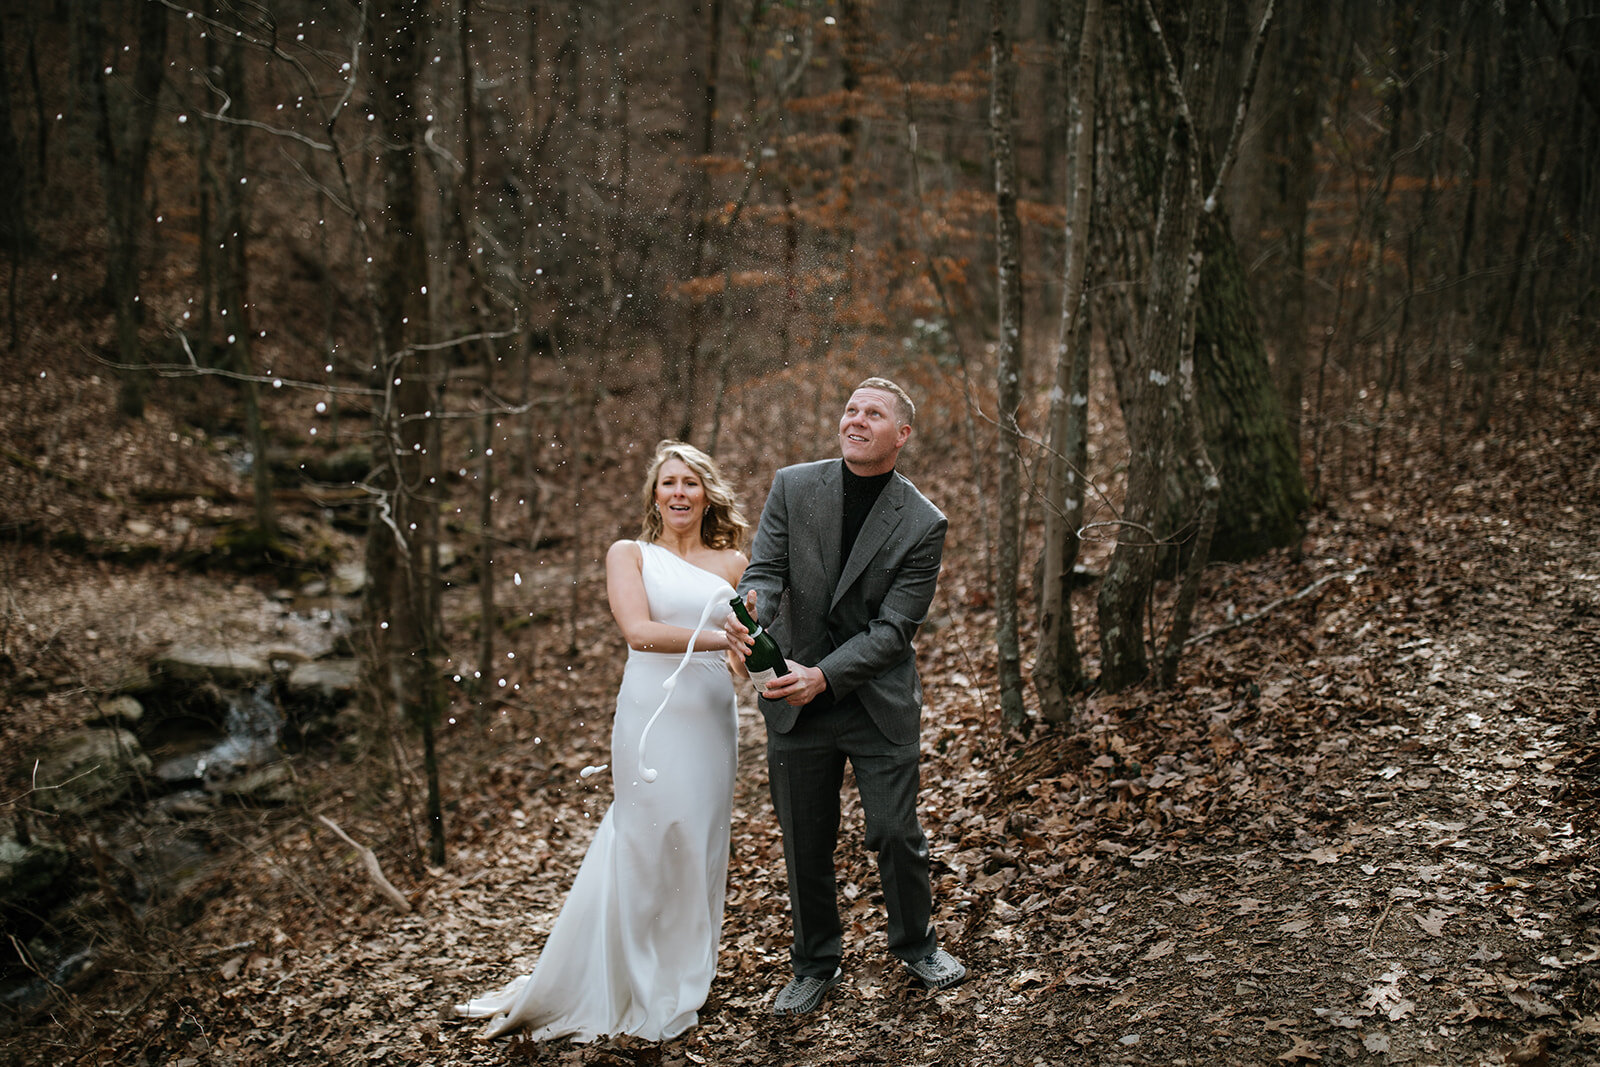 snoopers-rock-adventure-elopement-chattanooga-wedding-photographerfoster-falls-elopement-chattanooga-wedding-photographer-512_websize.jpg